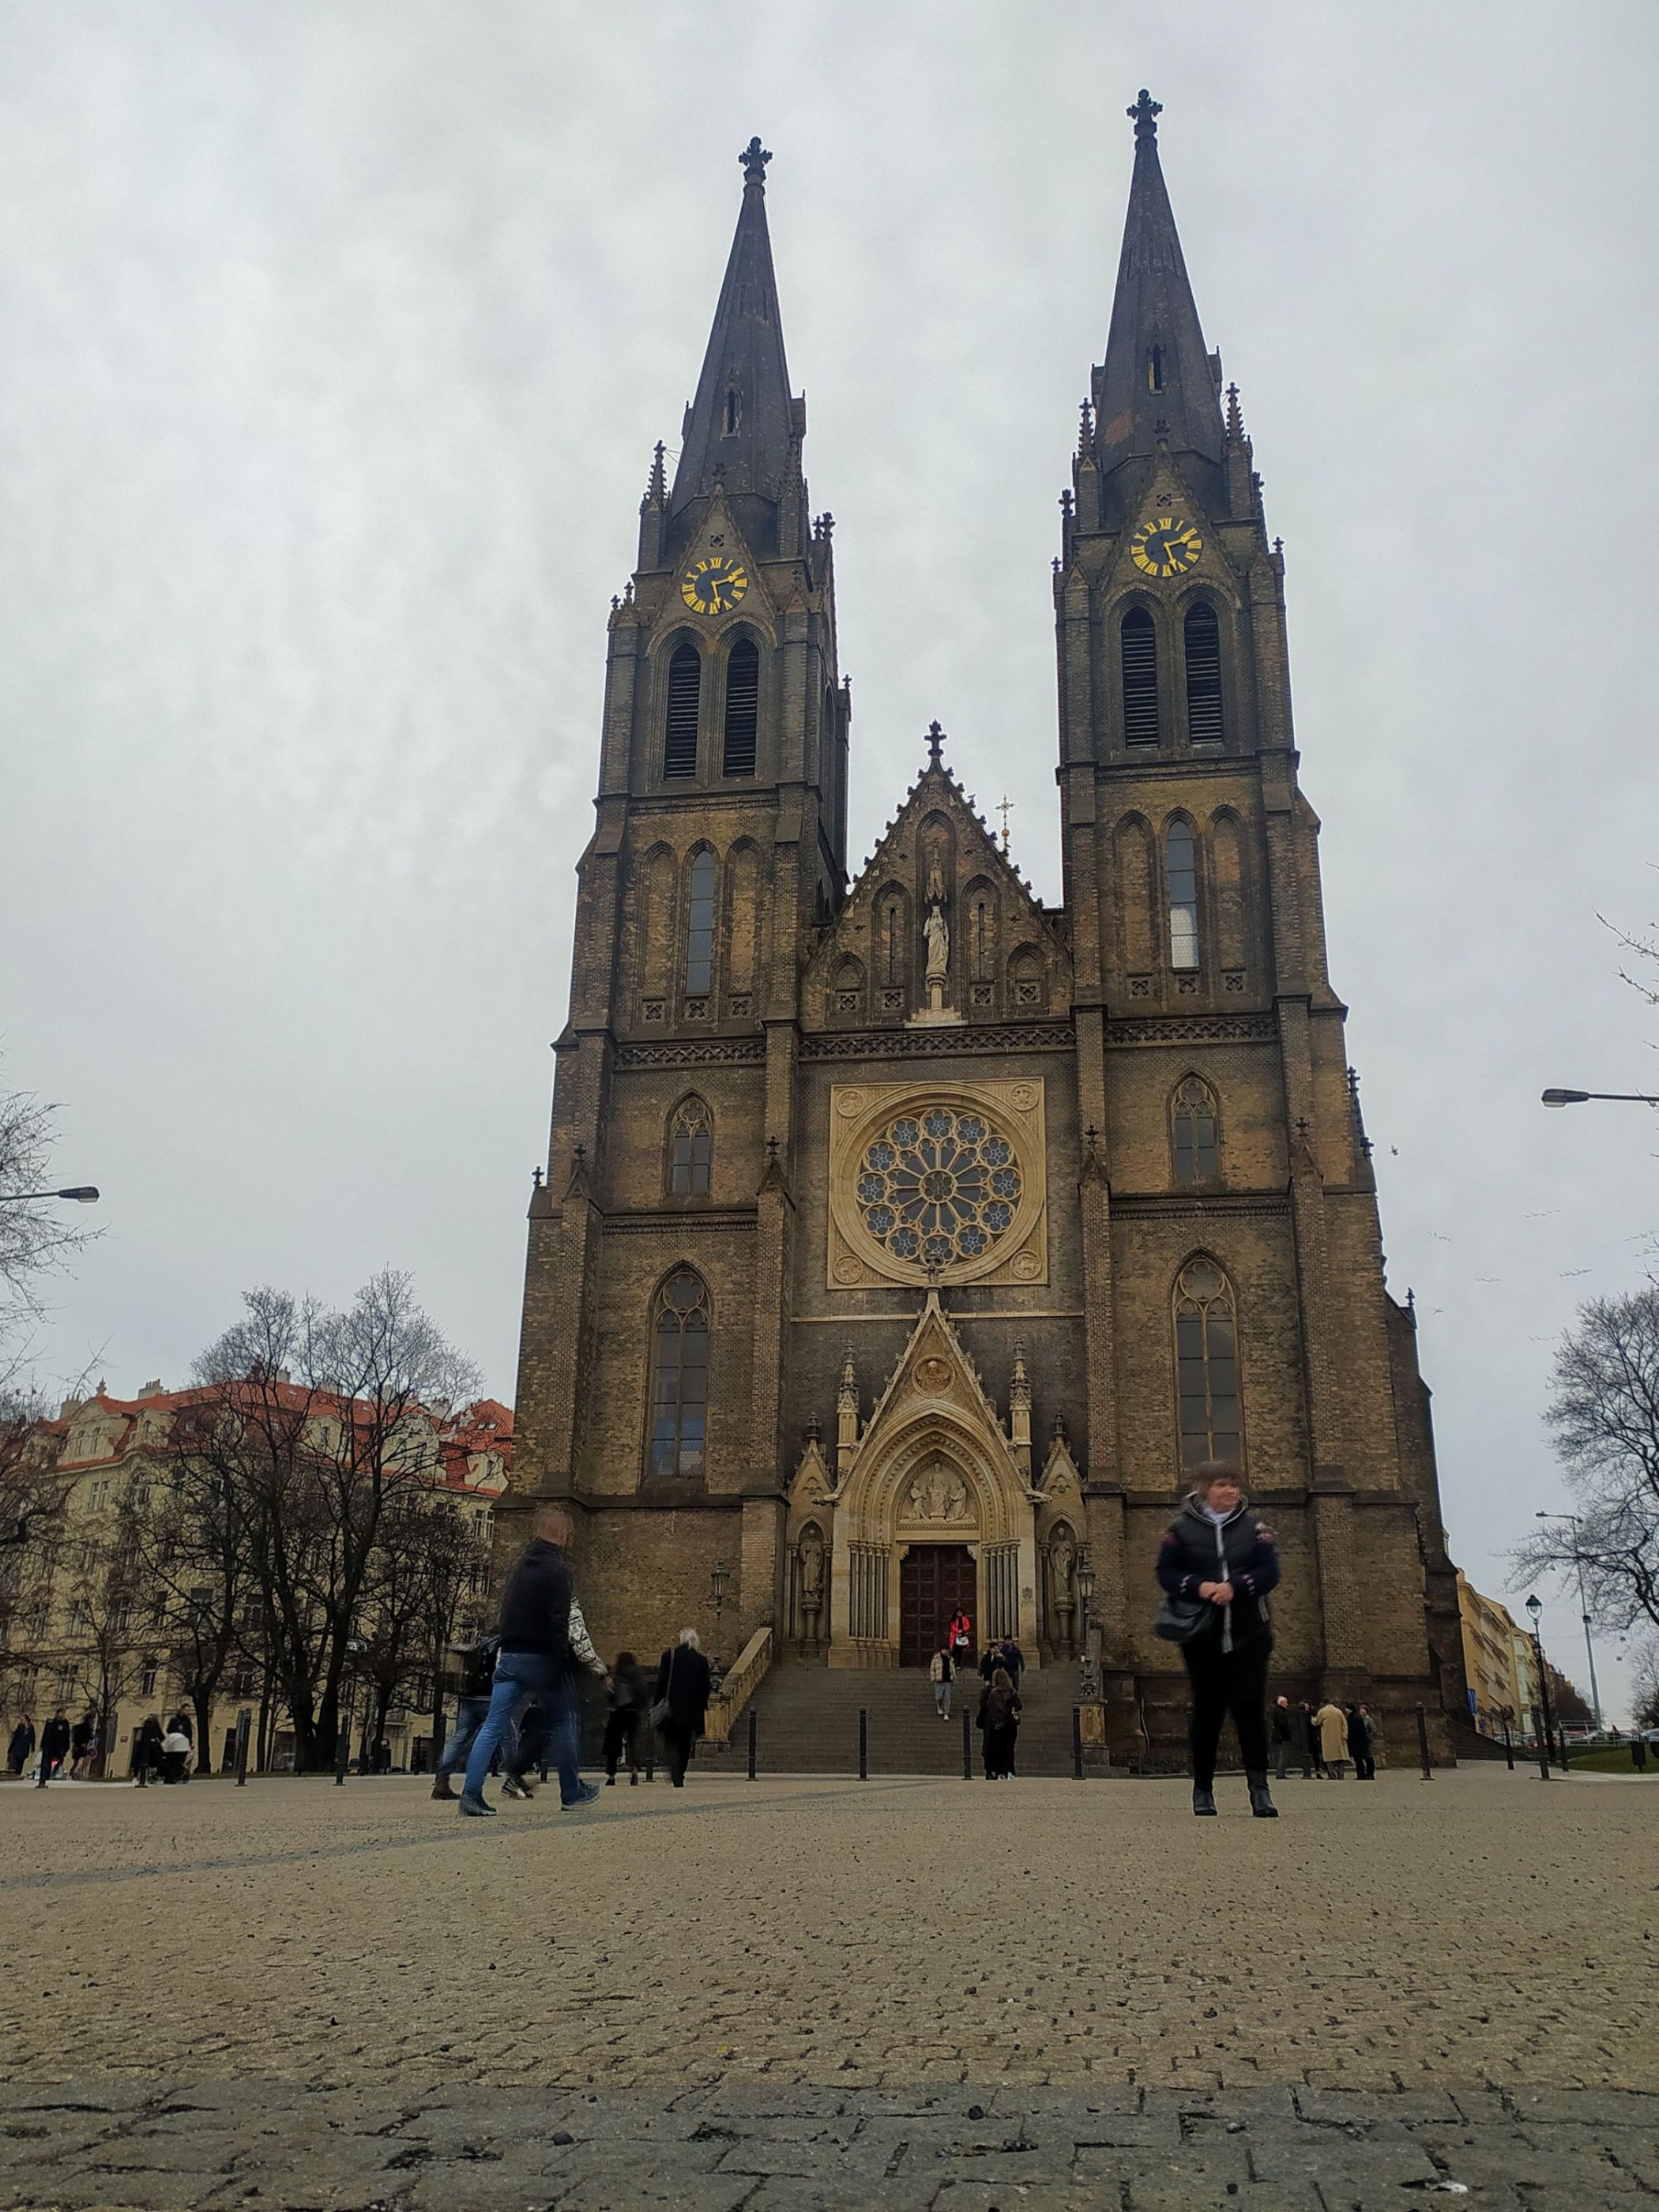 Bazilika sv Ludmily in Prague